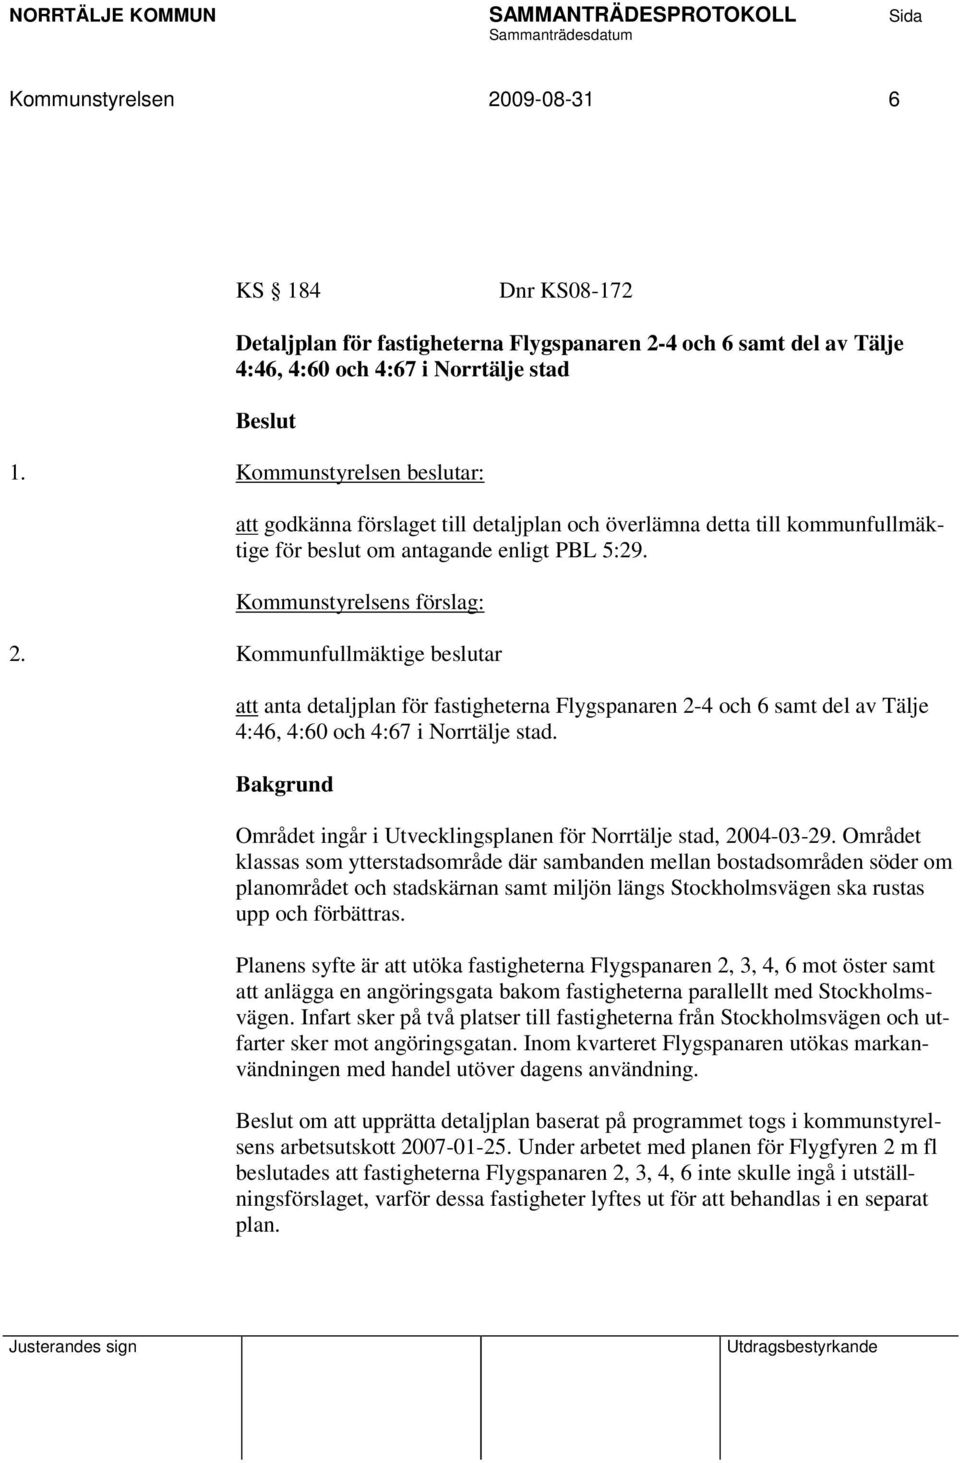 Kommunfullmäktige beslutar att anta detaljplan för fastigheterna Flygspanaren 2-4 och 6 samt del av Tälje 4:46, 4:60 och 4:67 i Norrtälje stad.